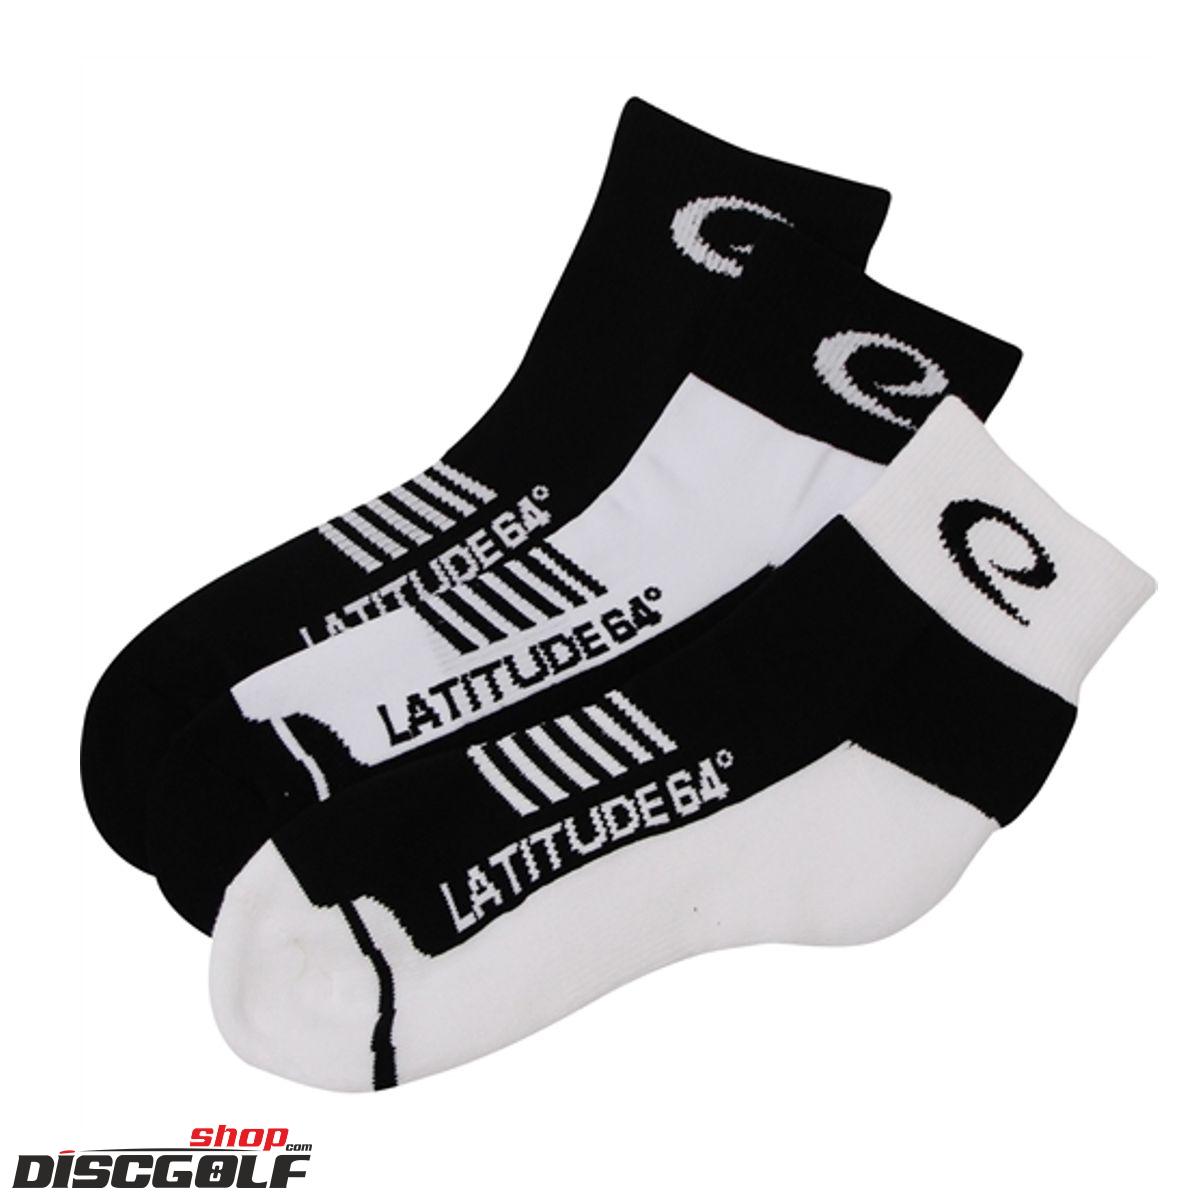  Latitude 64º Ponožky 3 páry - velikost L/XL 10-13